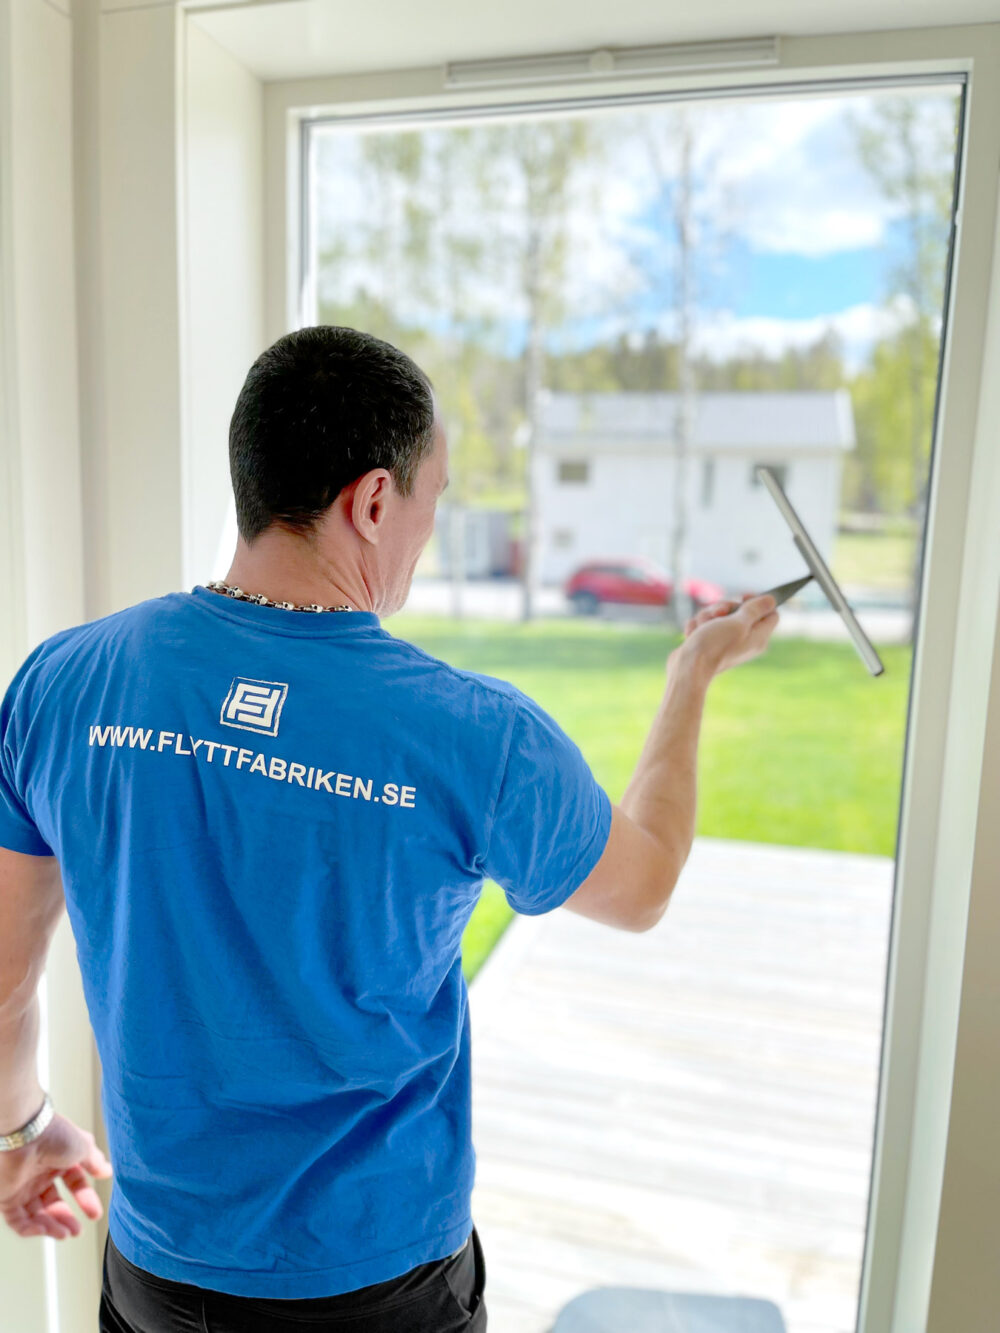 Fönsterputsning under flyttstädning i Stockholm utförs av en medarbetare klädd i Flyttfabrikens blå t-shirt.